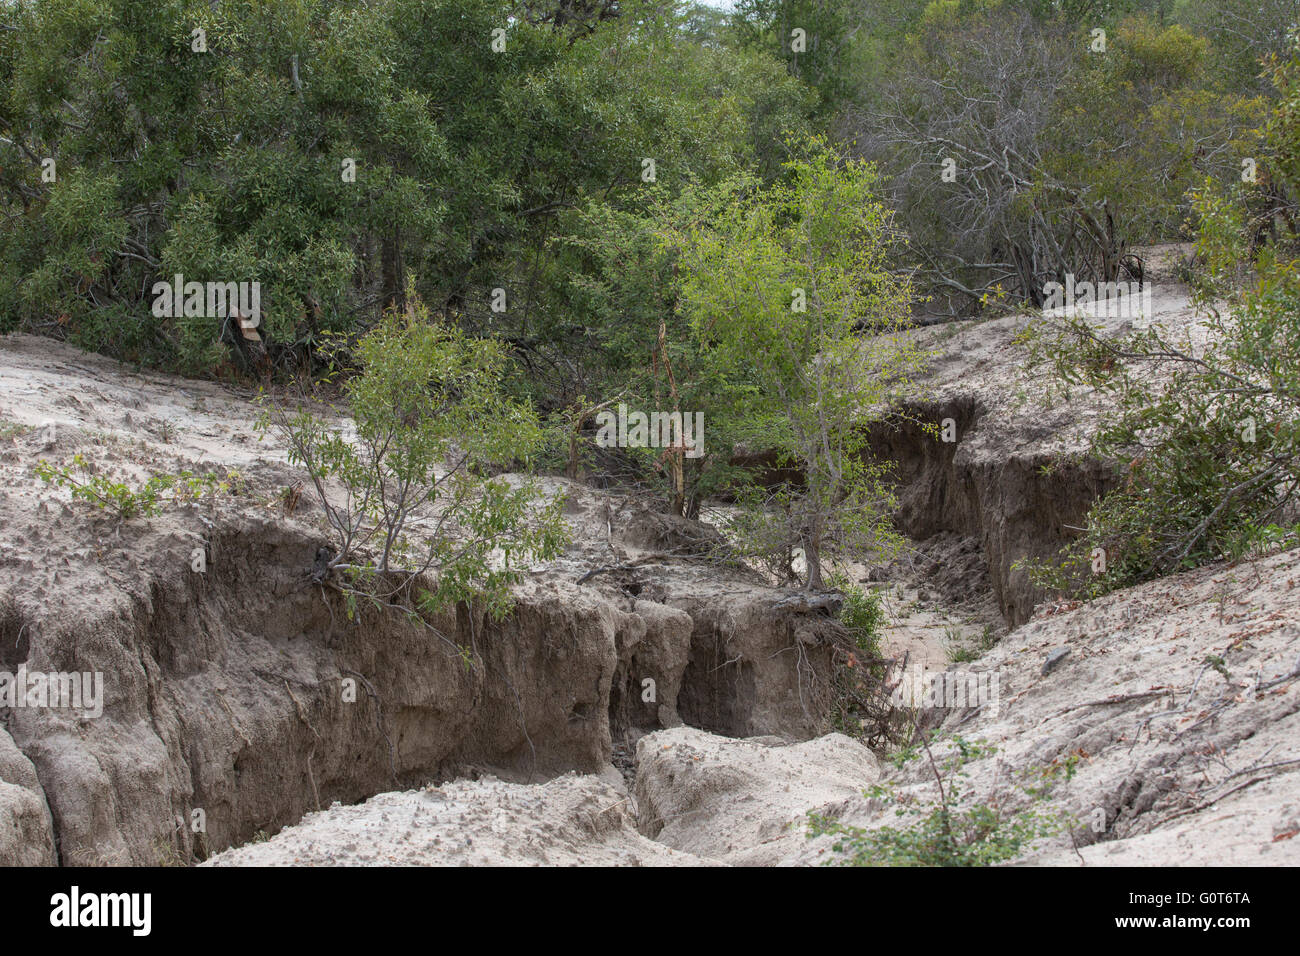 Severe soil erosion donga in sodic soil Stock Photo